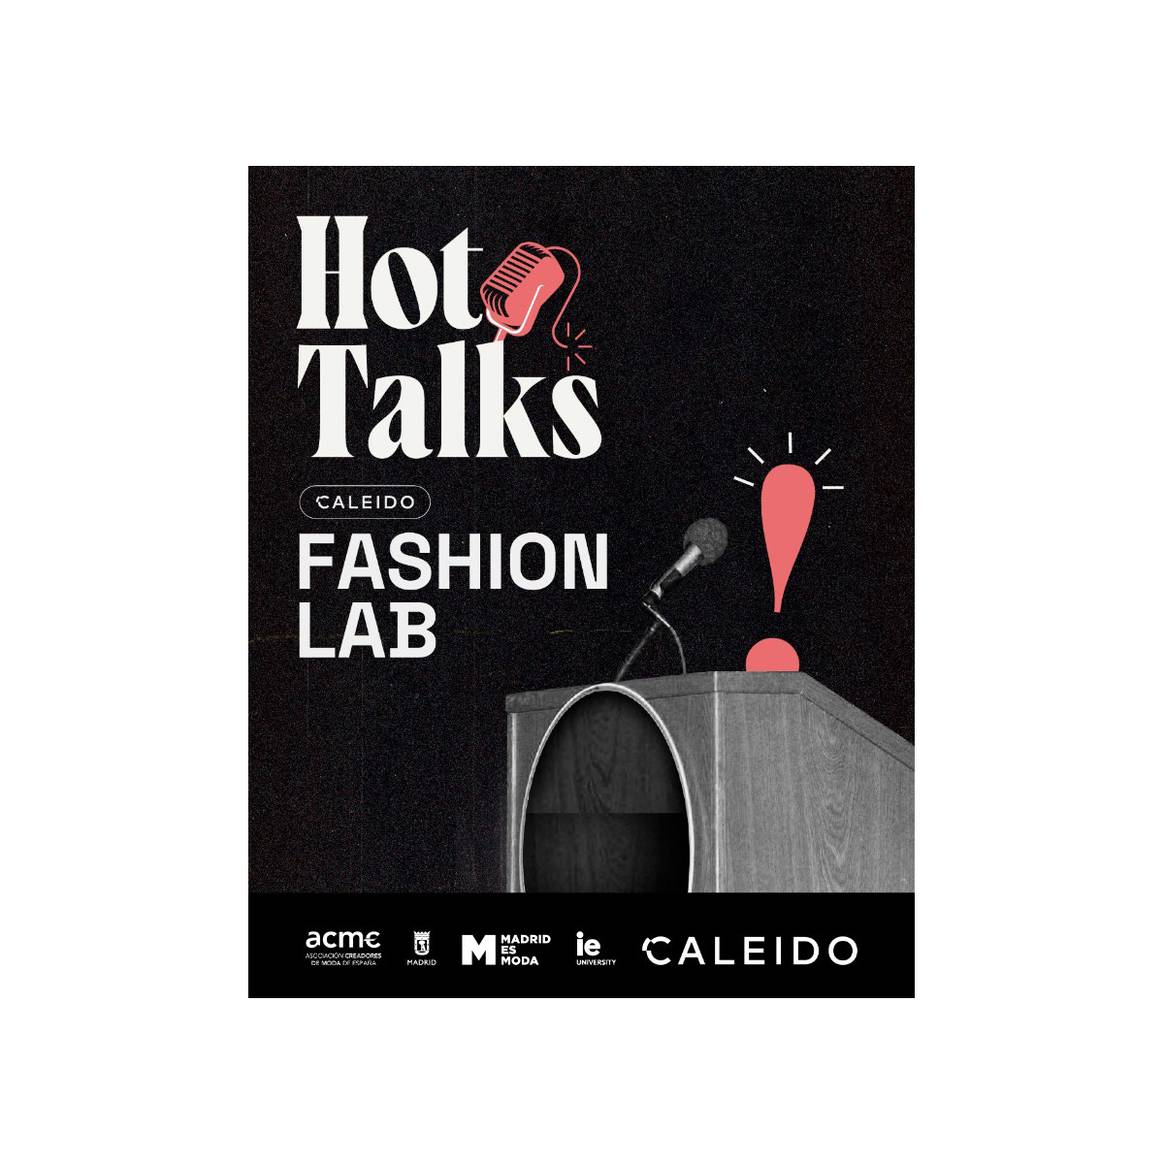 Cartel promocional de las “Hot Talks” de Caleido Fashion Lab.